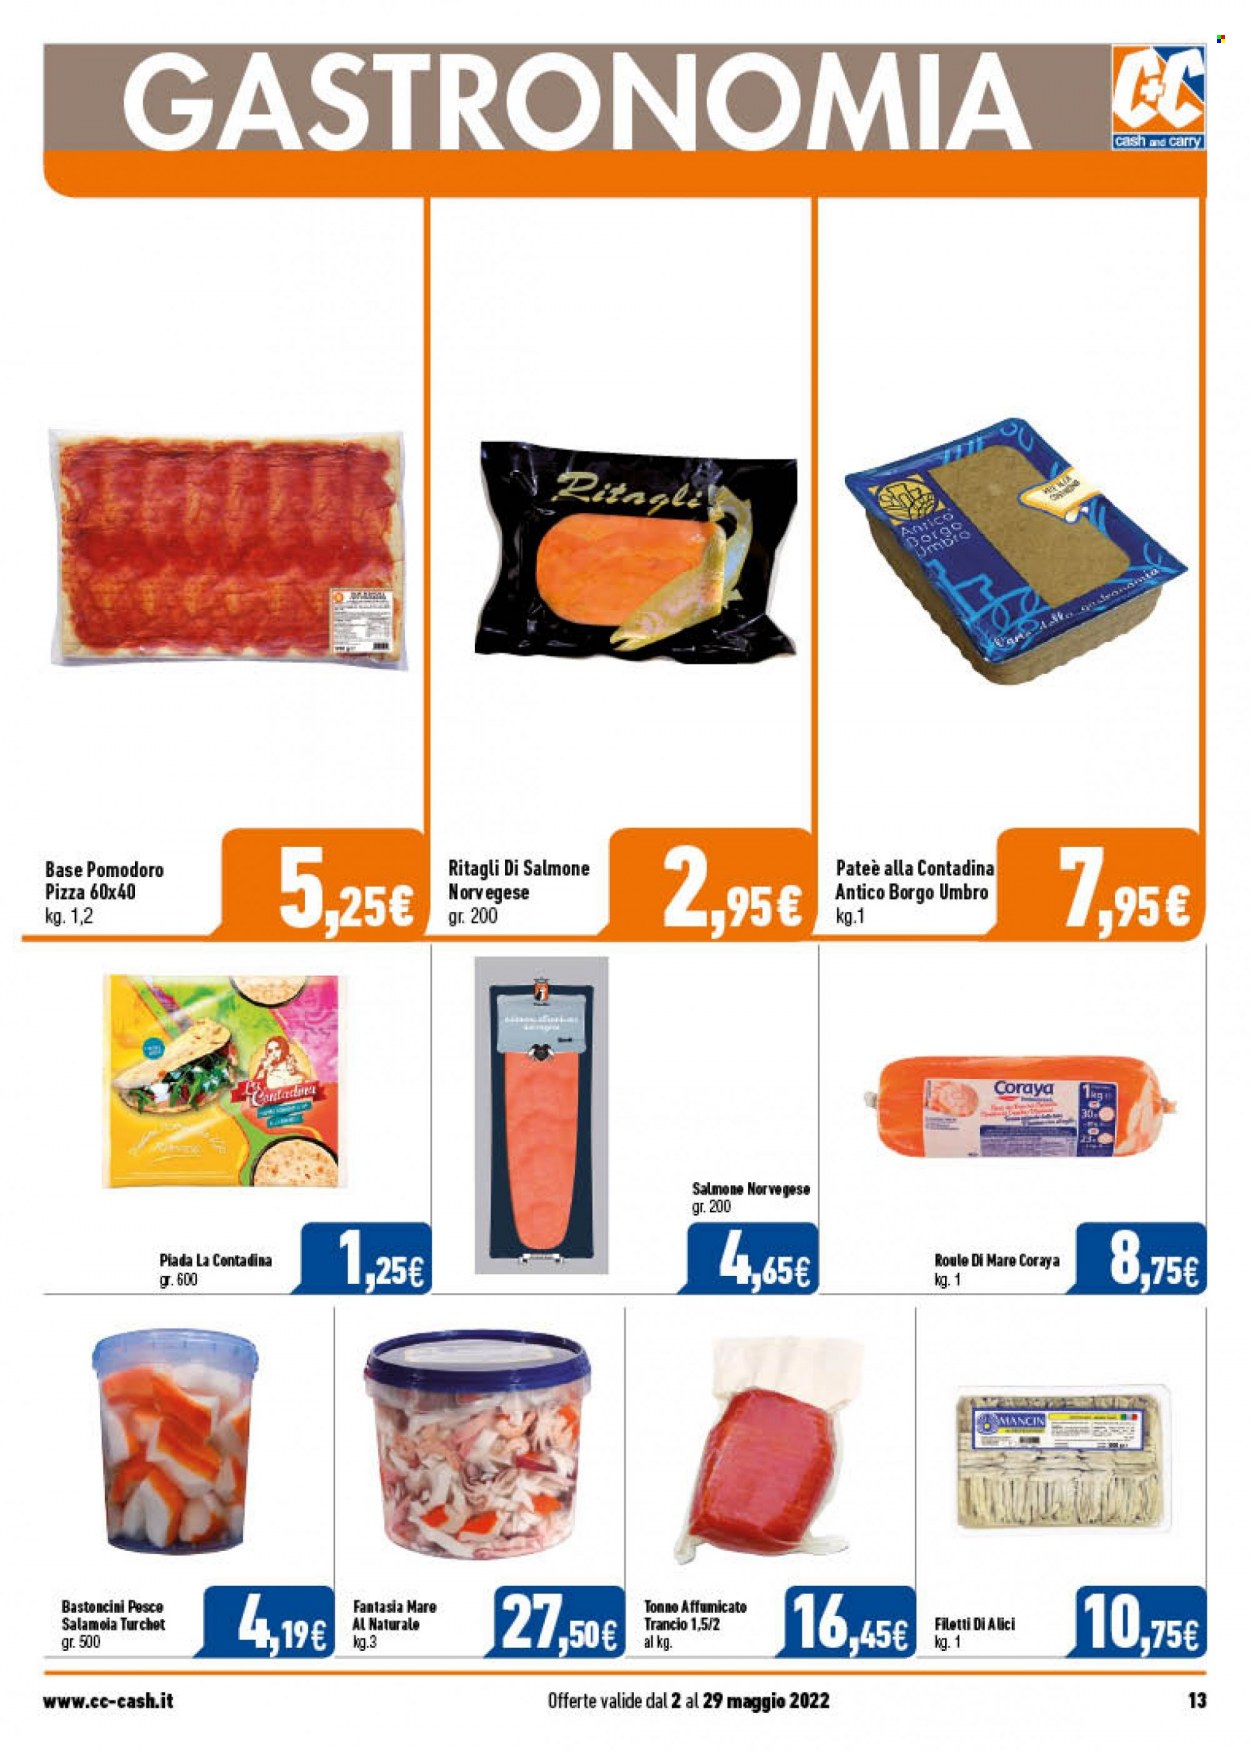 thumbnail - Volantino C+C Cash & Carry - 2/5/2022 - 29/5/2022 - Prodotti in offerta - Umbro, salmone, pesce, bastoncini, pizza, acciughe, filetti di alici. Pagina 13.